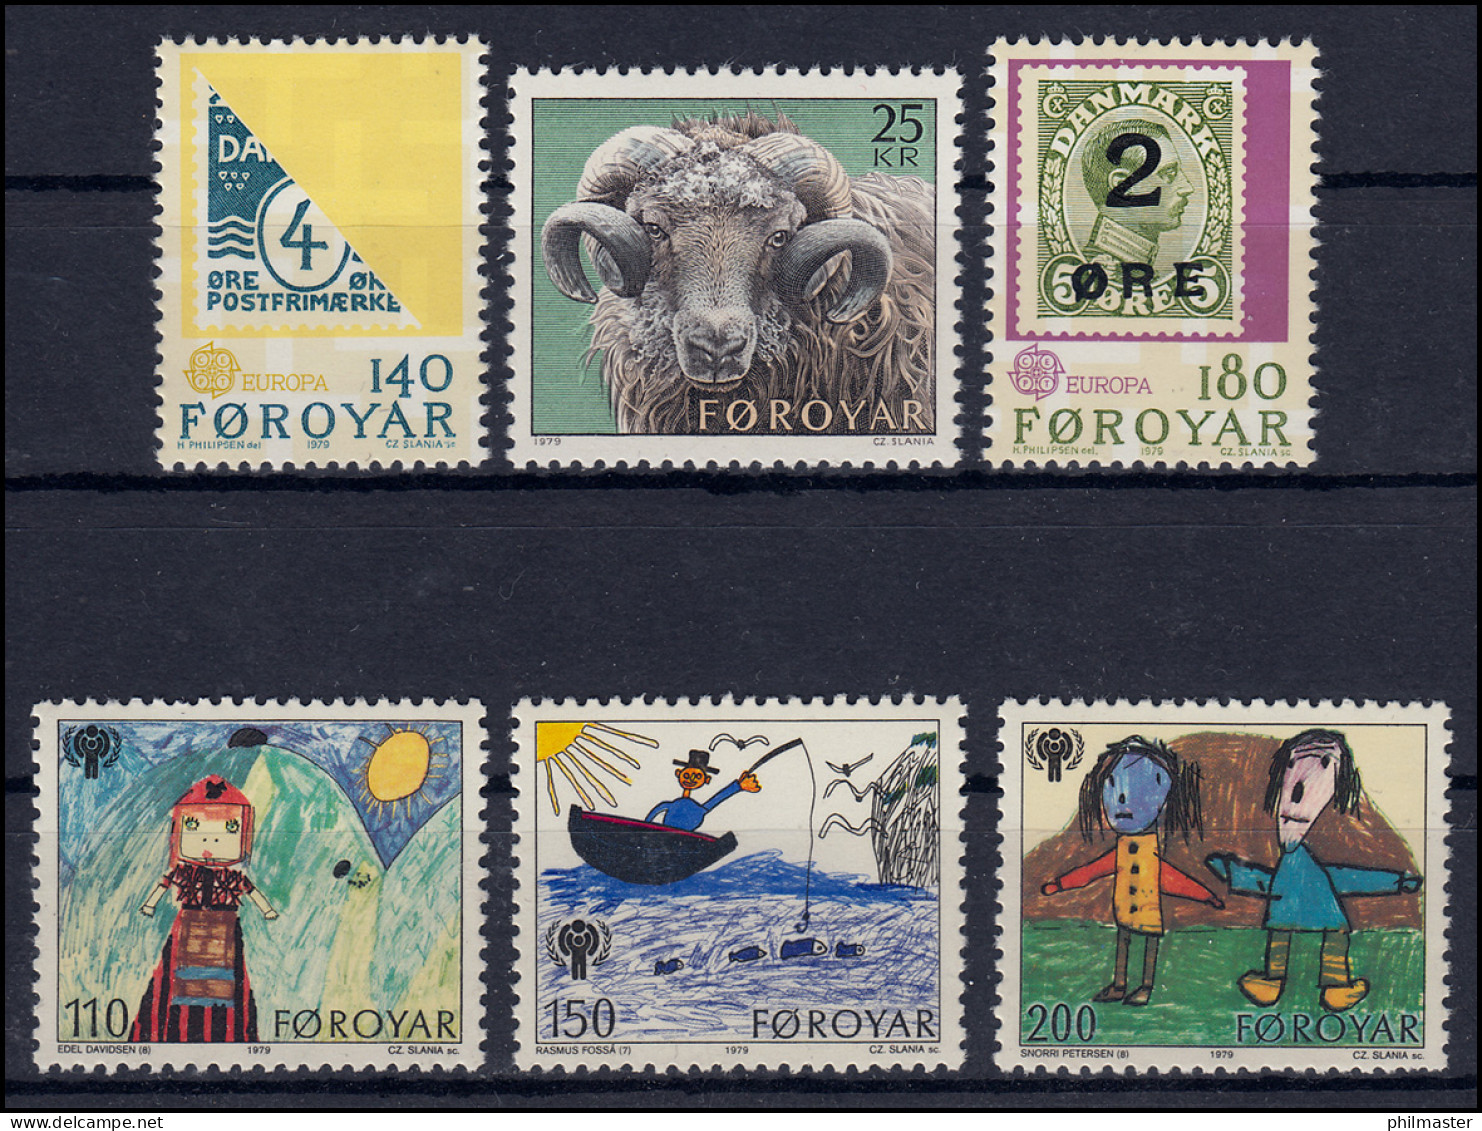 42-47 Dänemark-Färöer Jahrgang 1979 Komplett, ** Postfrisch - Färöer Inseln